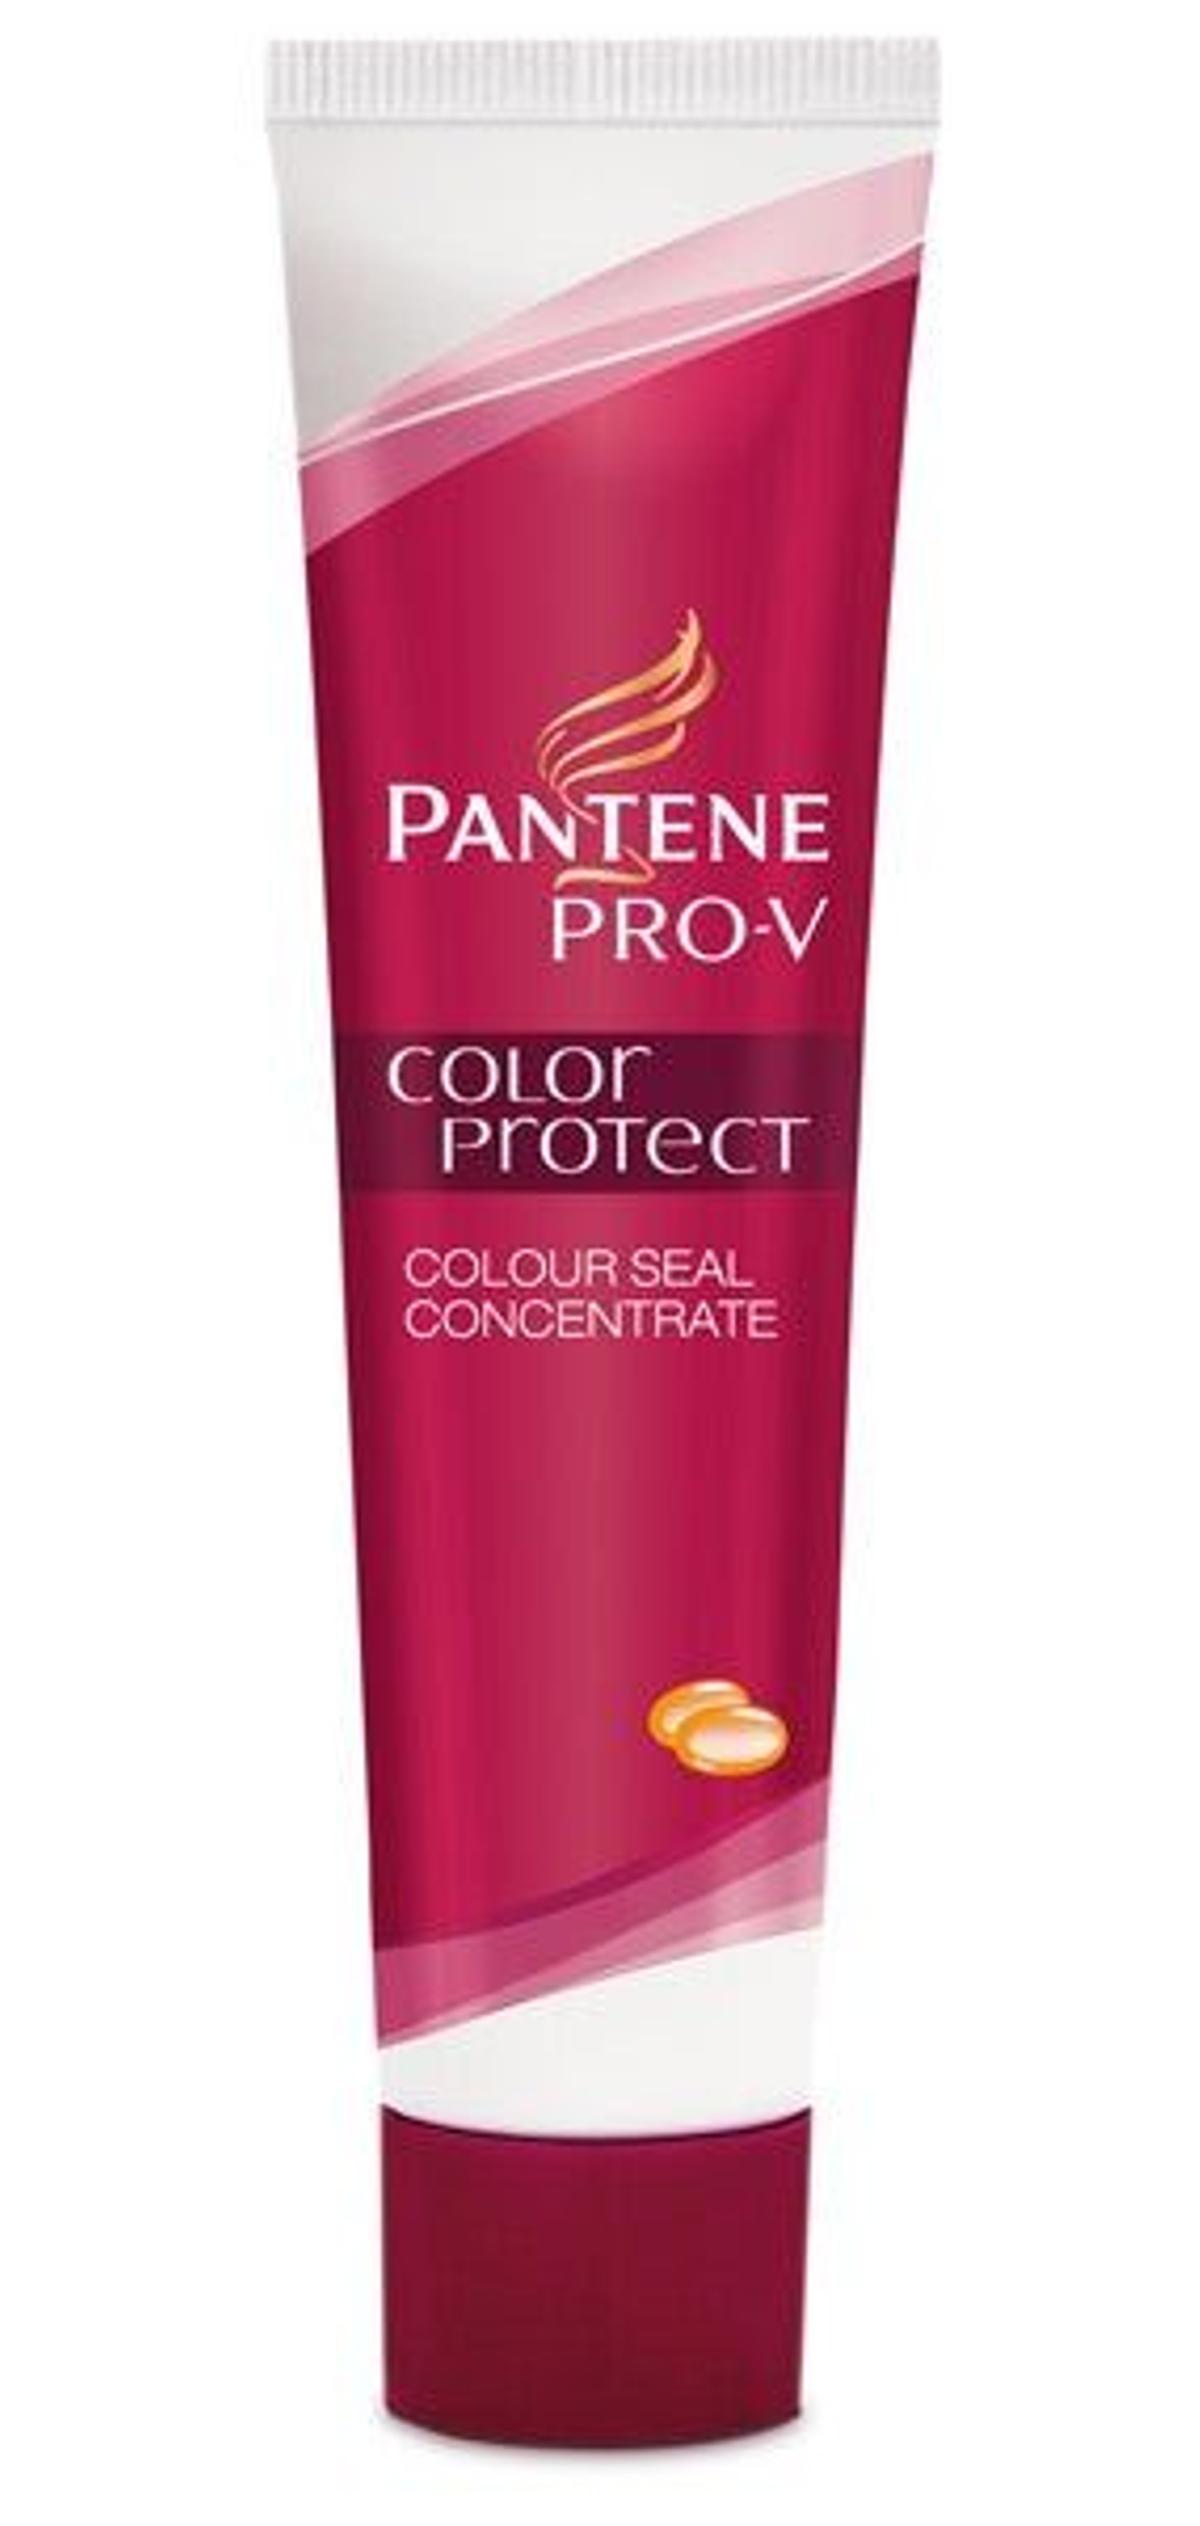 Color Protect de Pantene